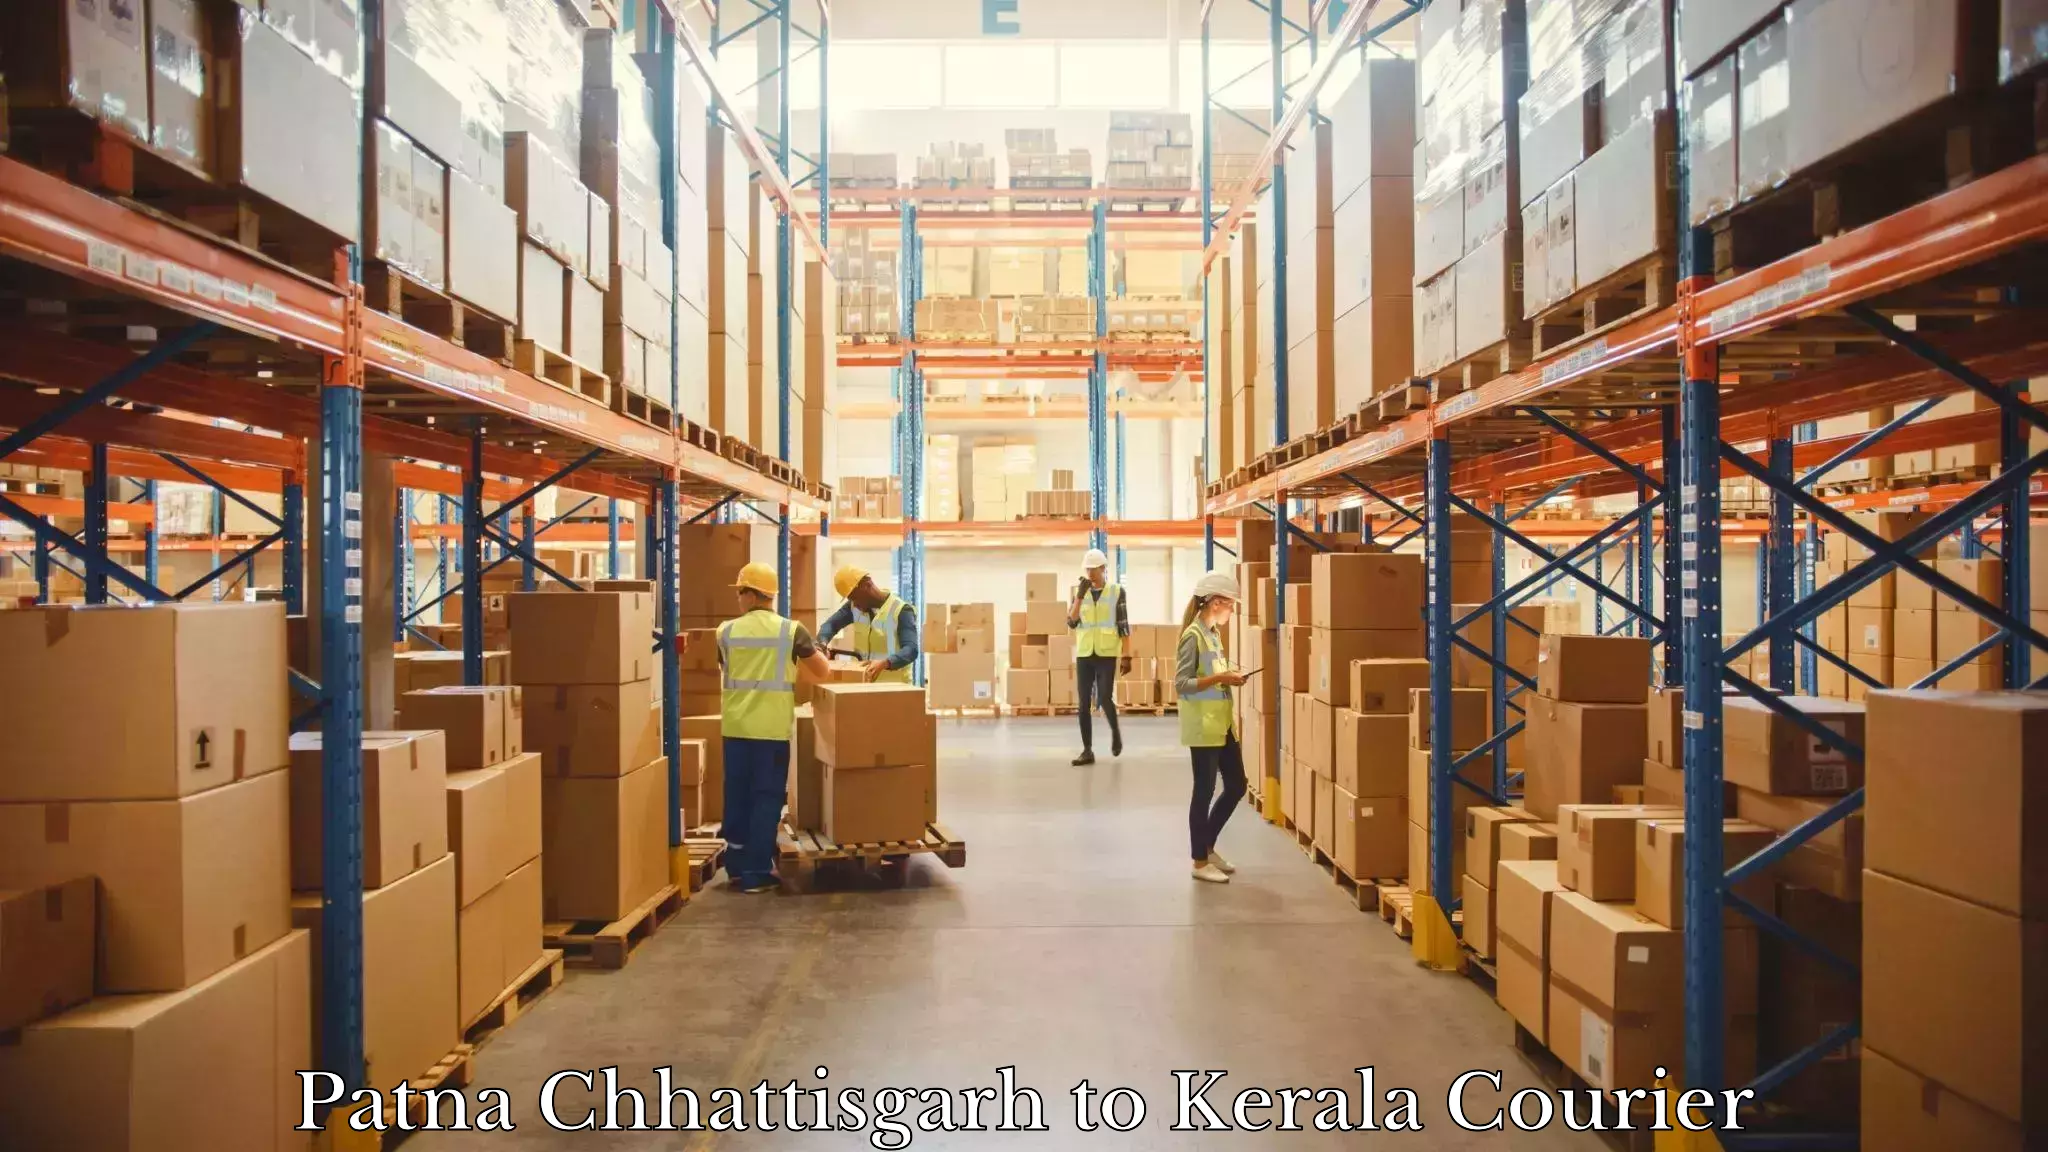 Multi-service courier options Patna Chhattisgarh to Cochin Port Kochi